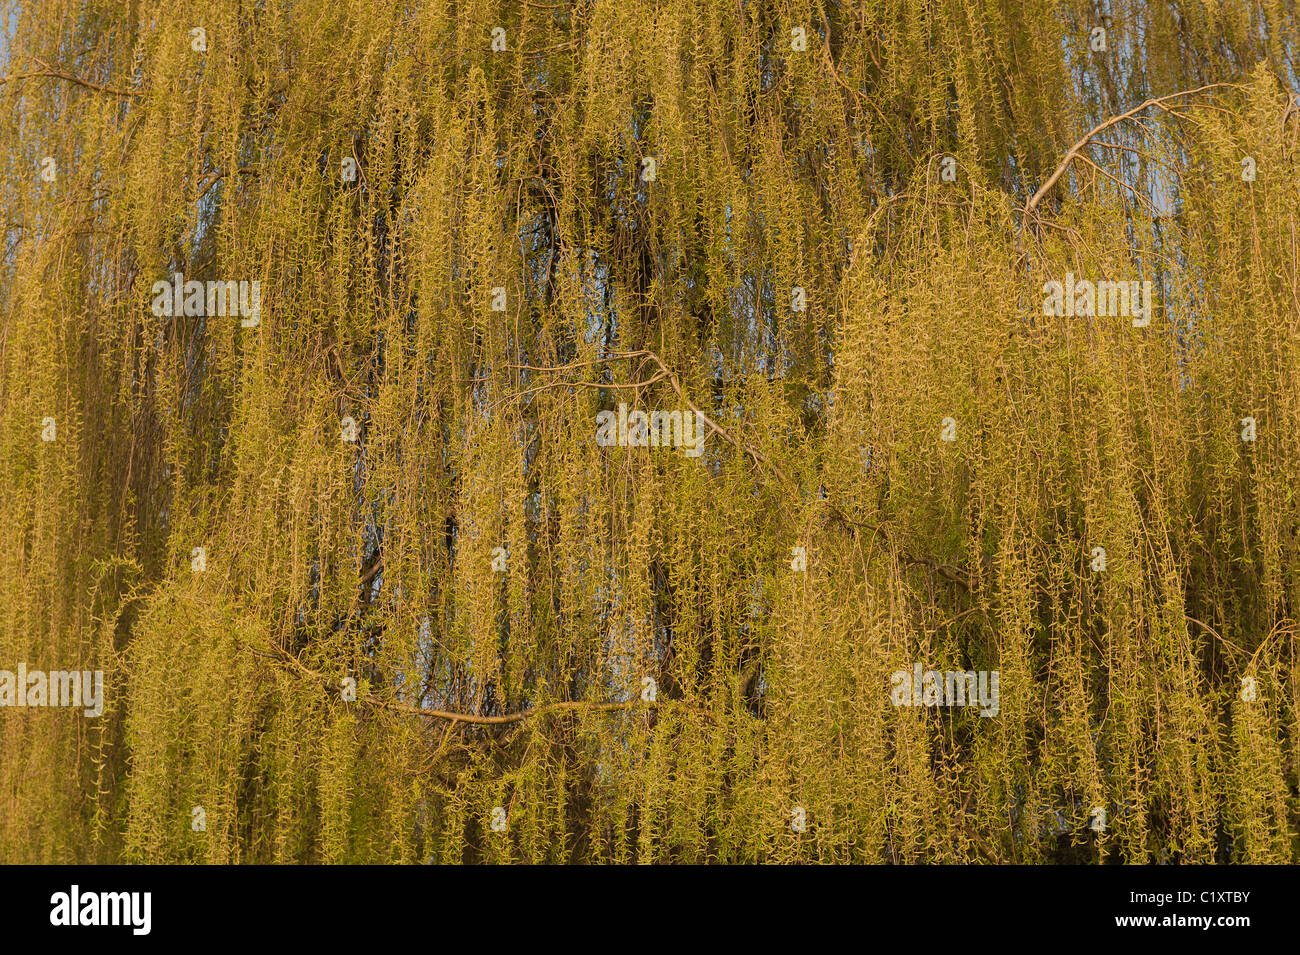 Goldene Trauerweide Salix Alba Tristis viele hängende verdrehten Niederlassungen mit neue Blätter und Kätzchen im Frühling Stockfoto